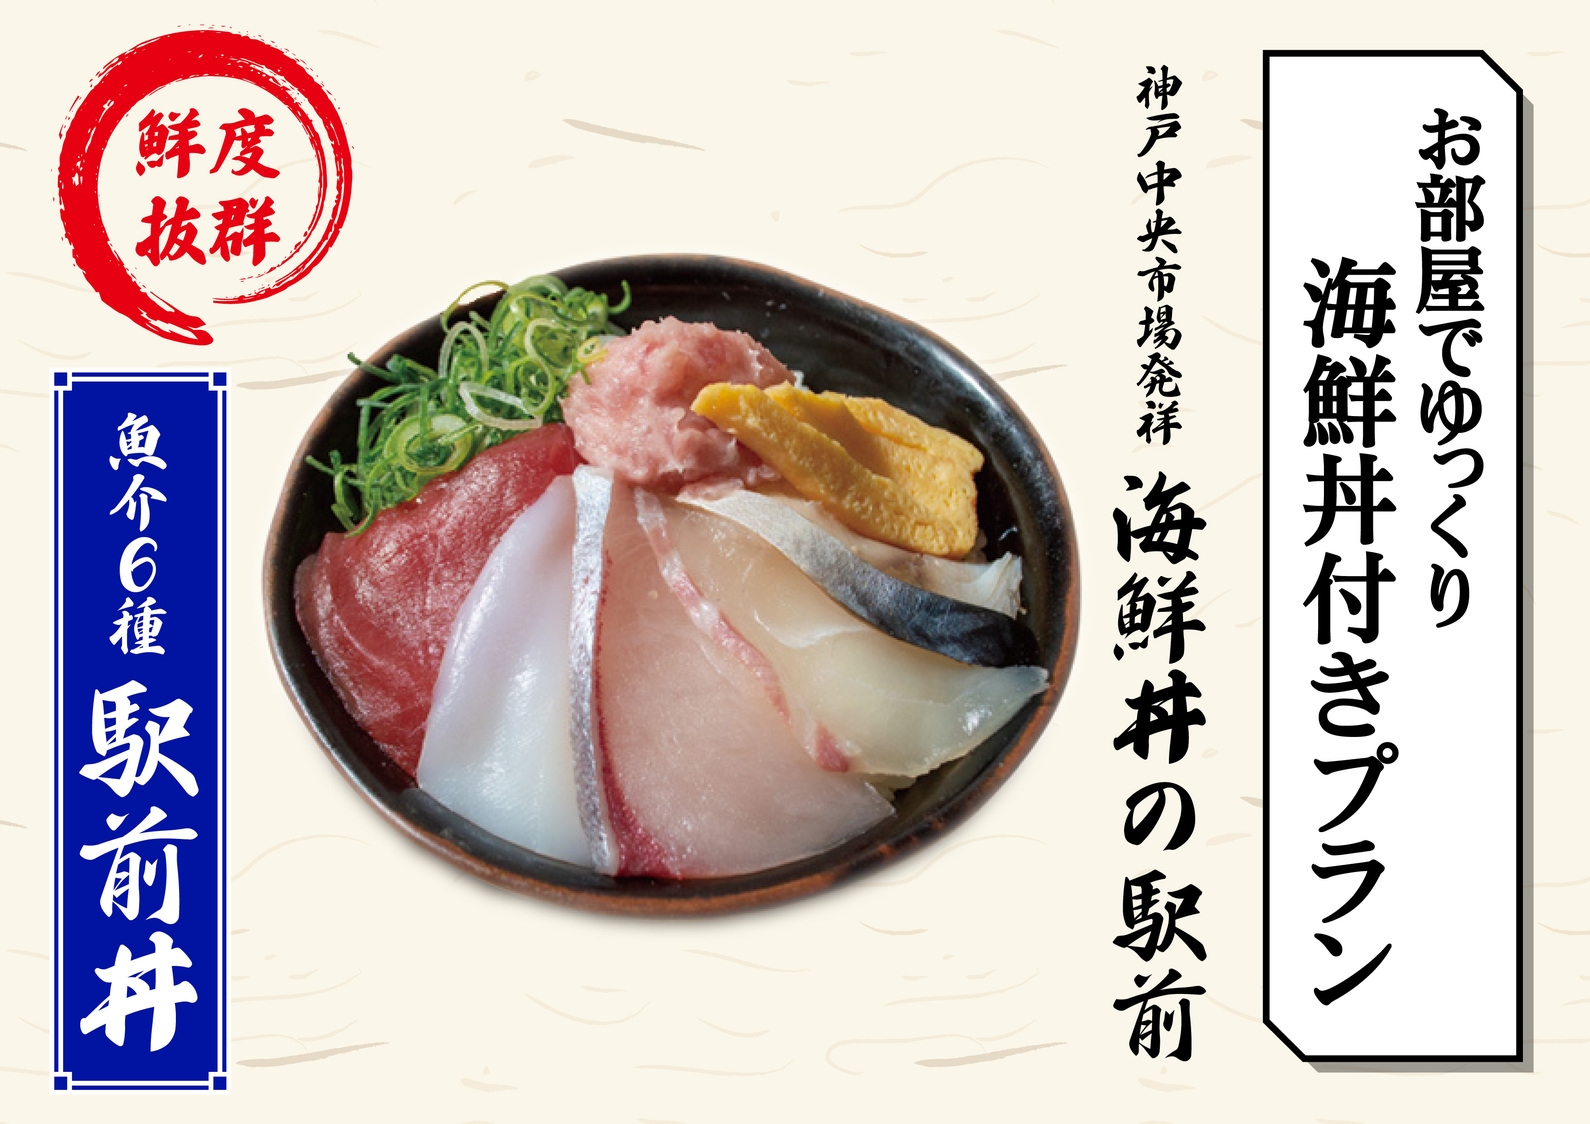 【海鮮丼】お部屋でゆっくり。海鮮丼専門店「駅前」の海鮮丼付きプラン